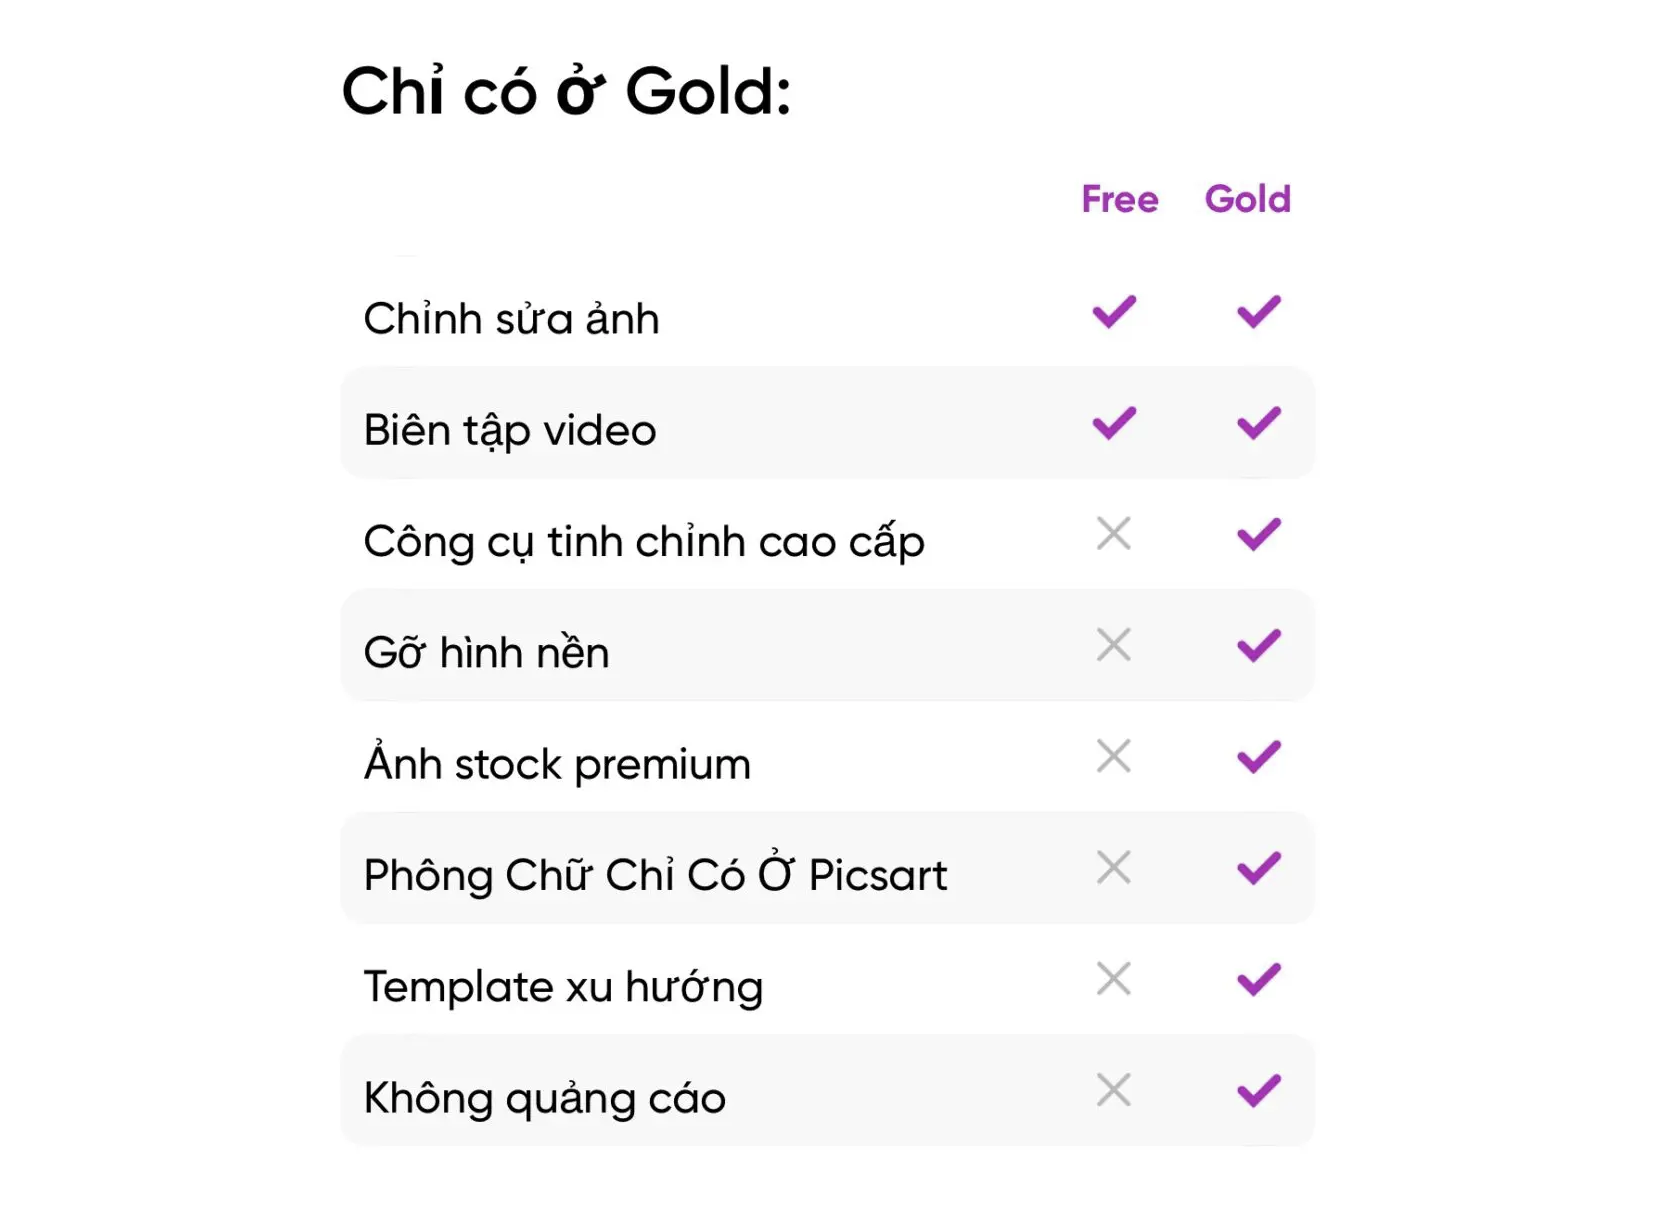 Picsart Gold vs Picsart Free